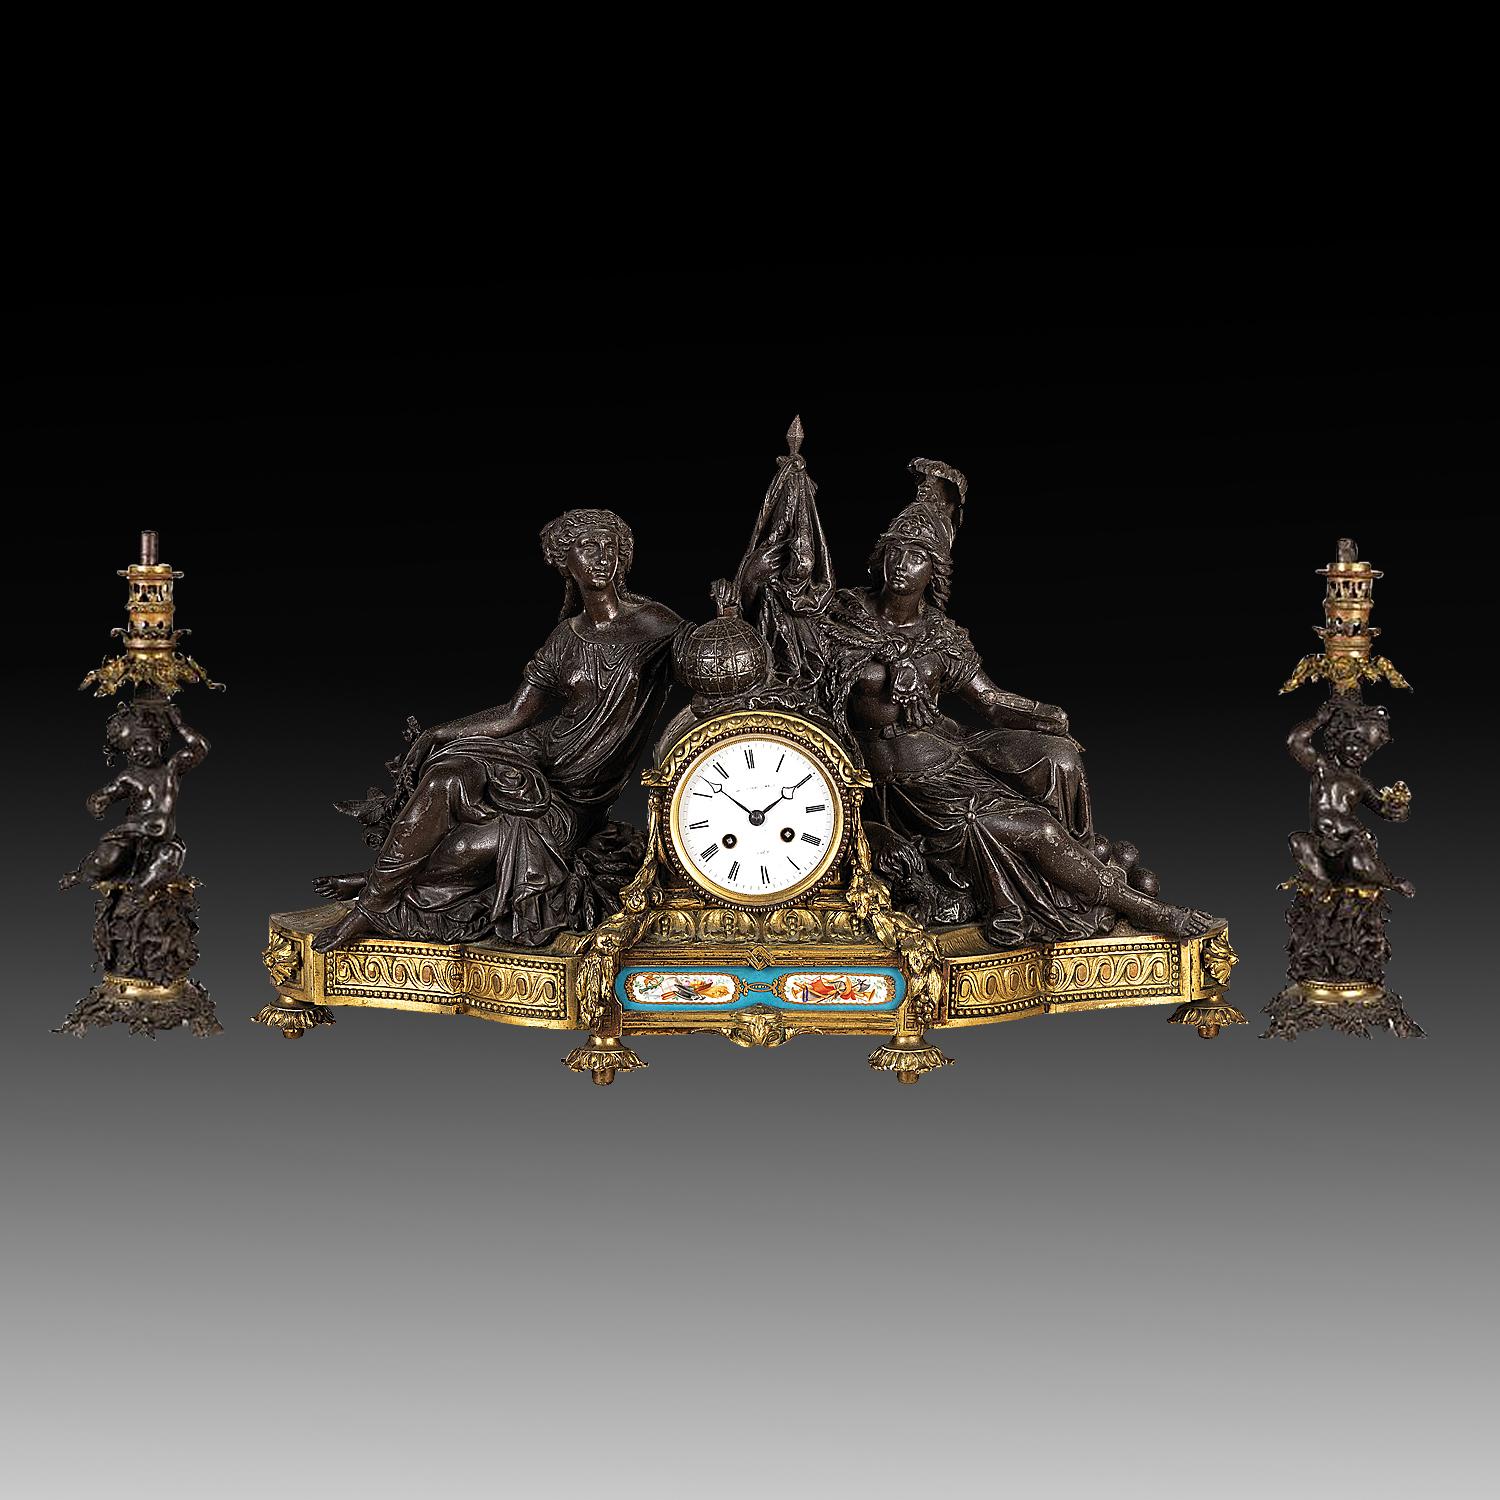 Ein außergewöhnliches, sehr feines französisches Triptychon aus der Mitte des 19. Jahrhunderts, vergoldete Bronze, skulpturale Empire-Manteluhr mit zwei Cherub-Öllampen

Es handelt sich um ein außergewöhnliches Stück fein gearbeiteter, dreiteiliger